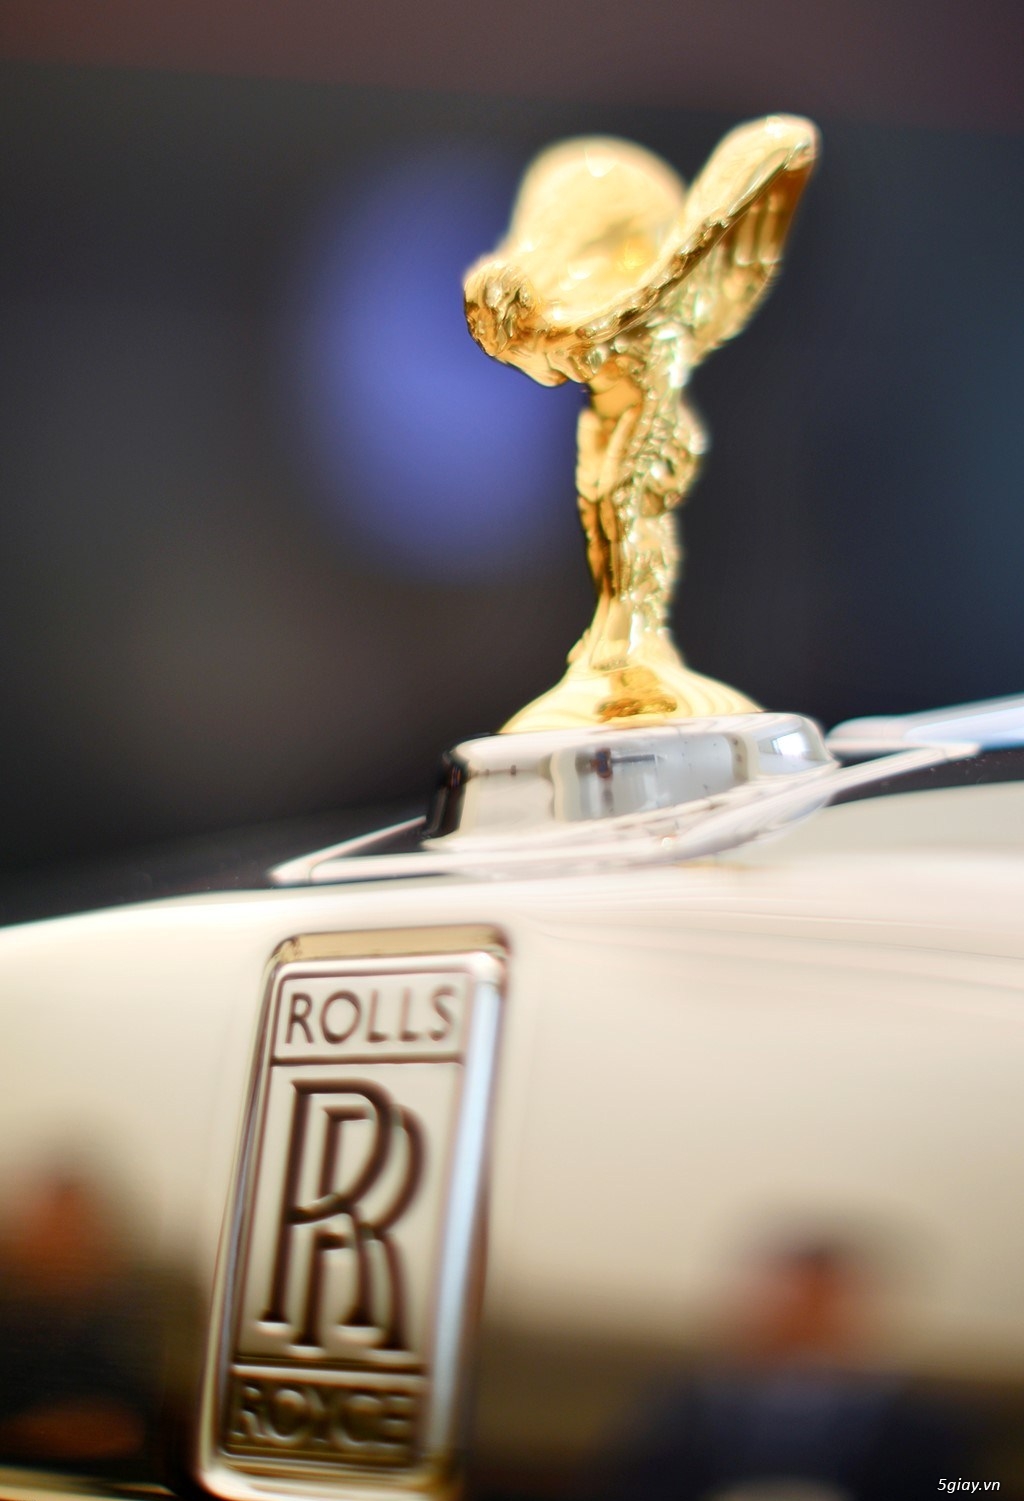 Rolls-Royce Phantom Oriental Sun độc nhất thế giới Mặt trời phương Đông - 3